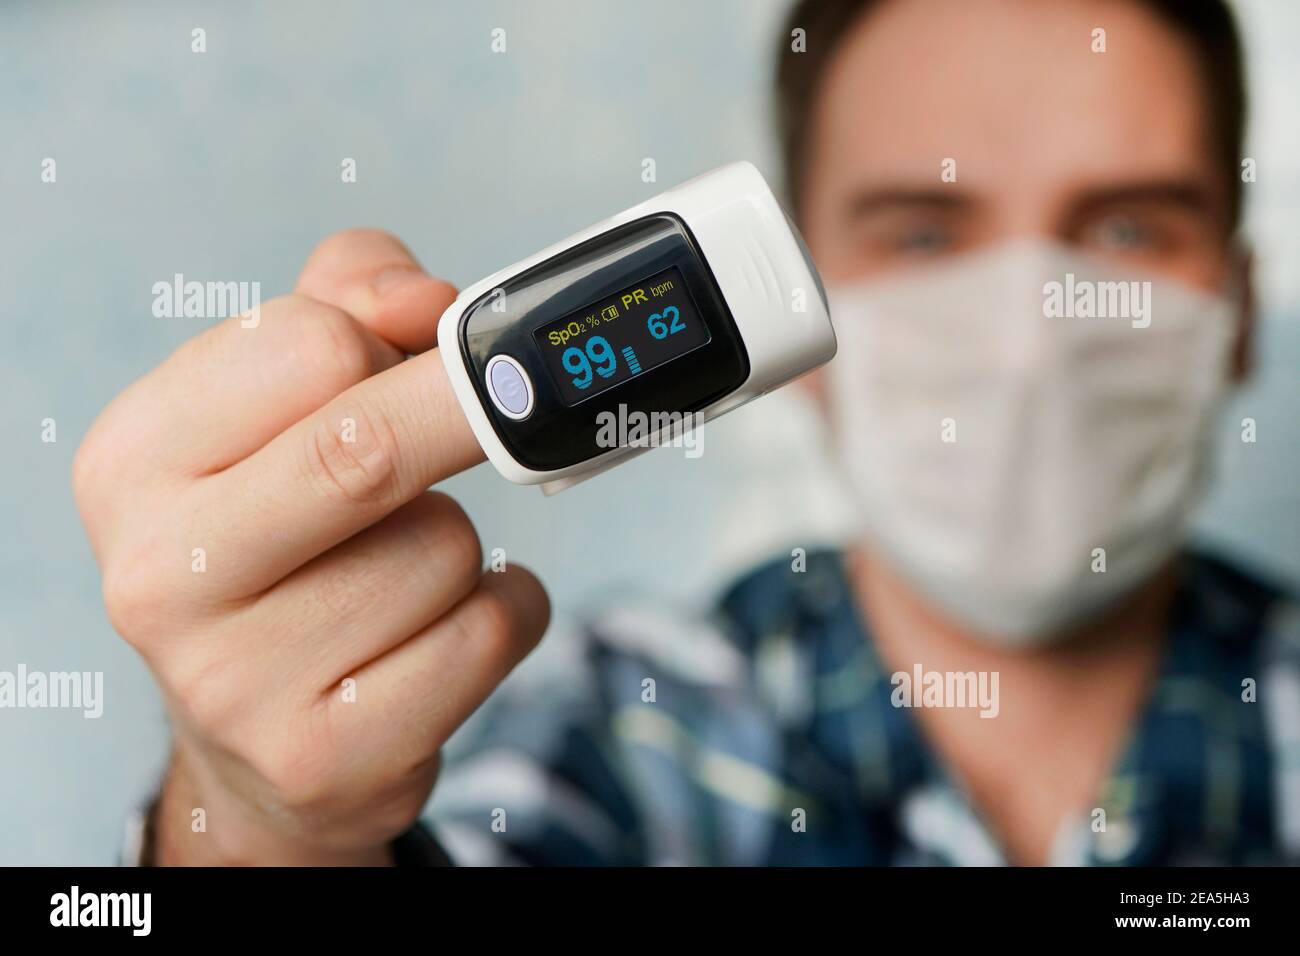 Pulsoximeter, digitales Fingergerät zur Messung der Sauerstoffsättigung im  Blut. Eine verminderte Oxygenierung ist ein Notfallzeichen für eine  Lungenentzündung, die durch verursacht wird Stockfotografie - Alamy